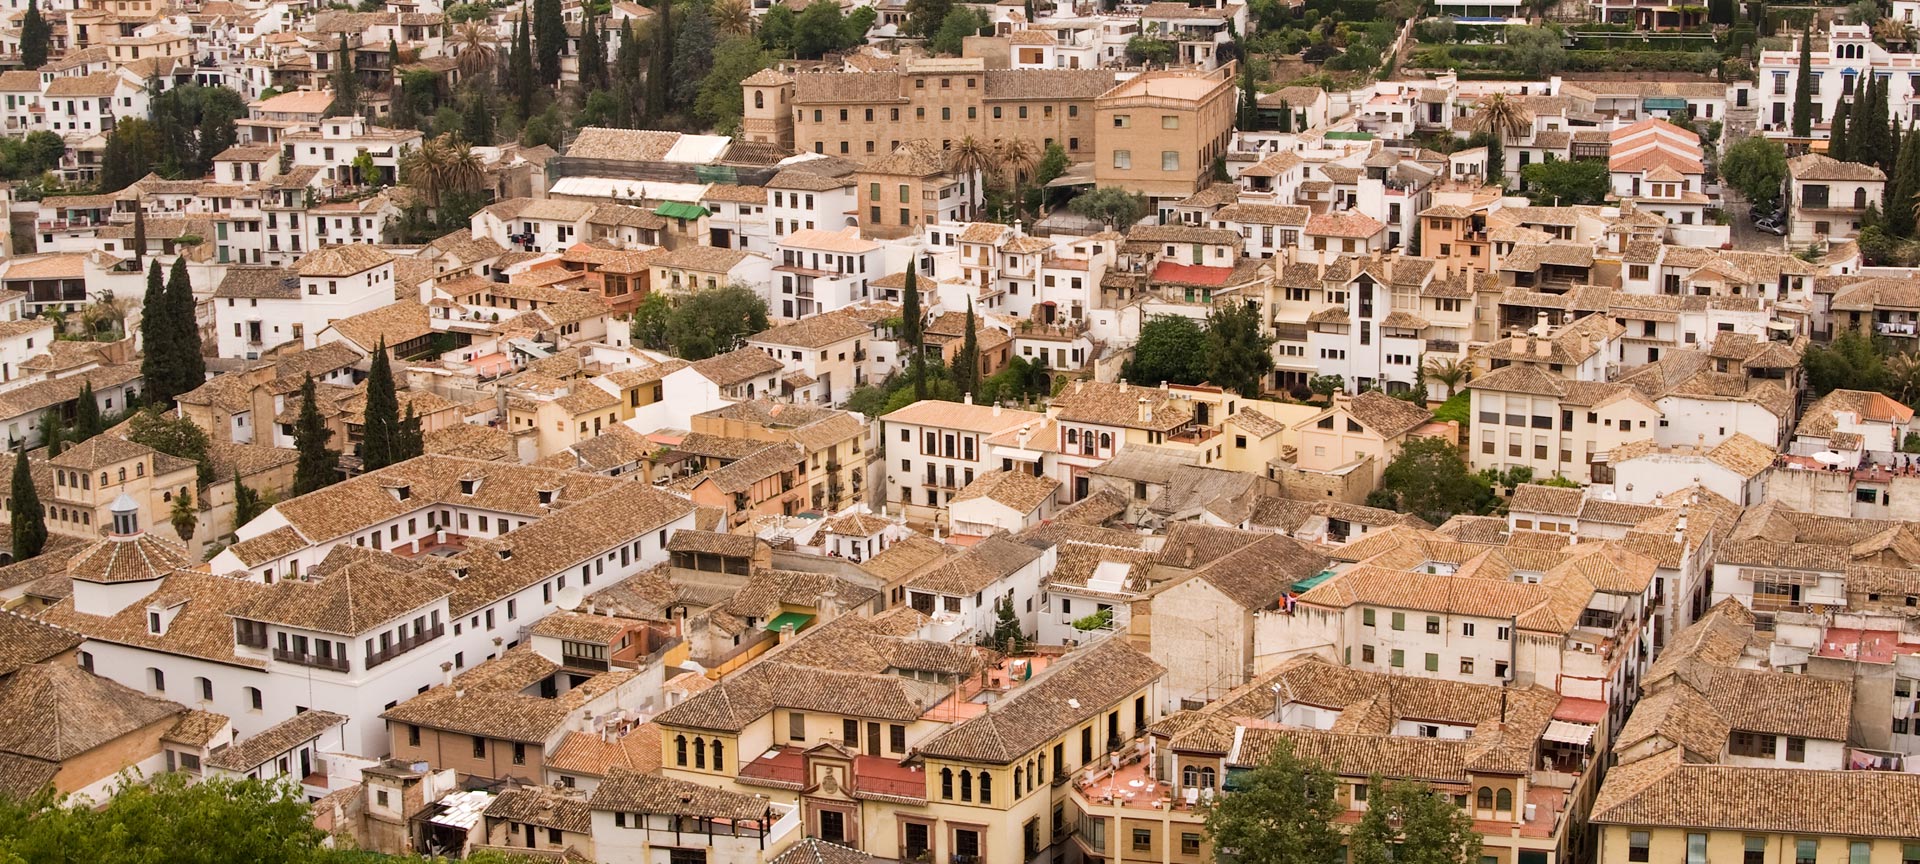 View of the Albaicín quarter in Granada